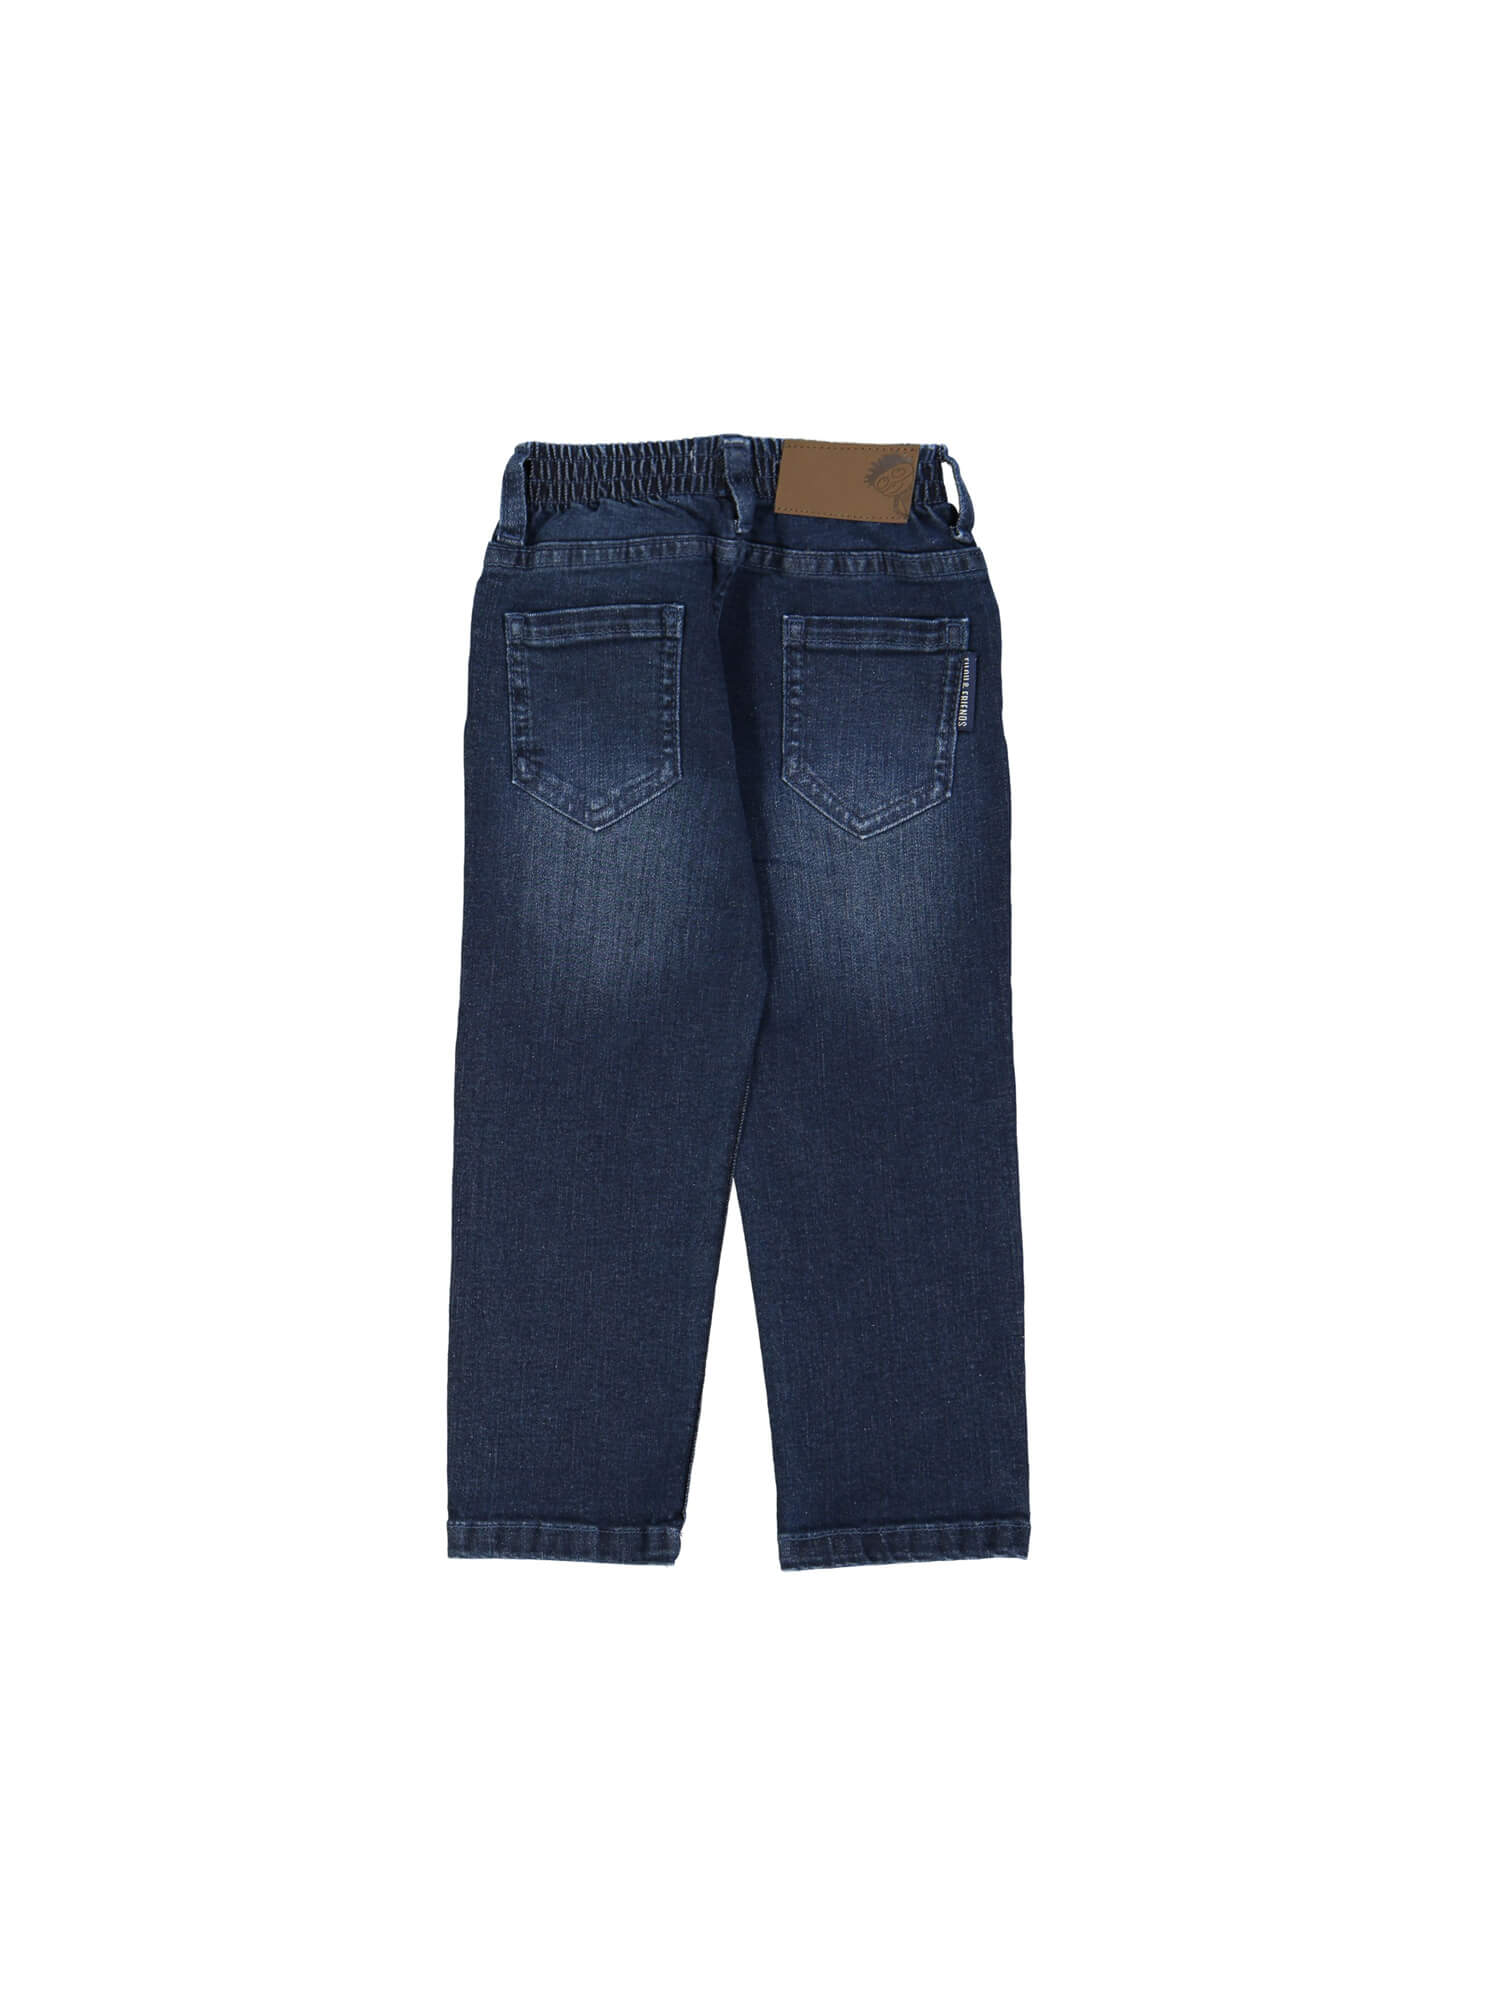 jeans regular blauw rekker 09j